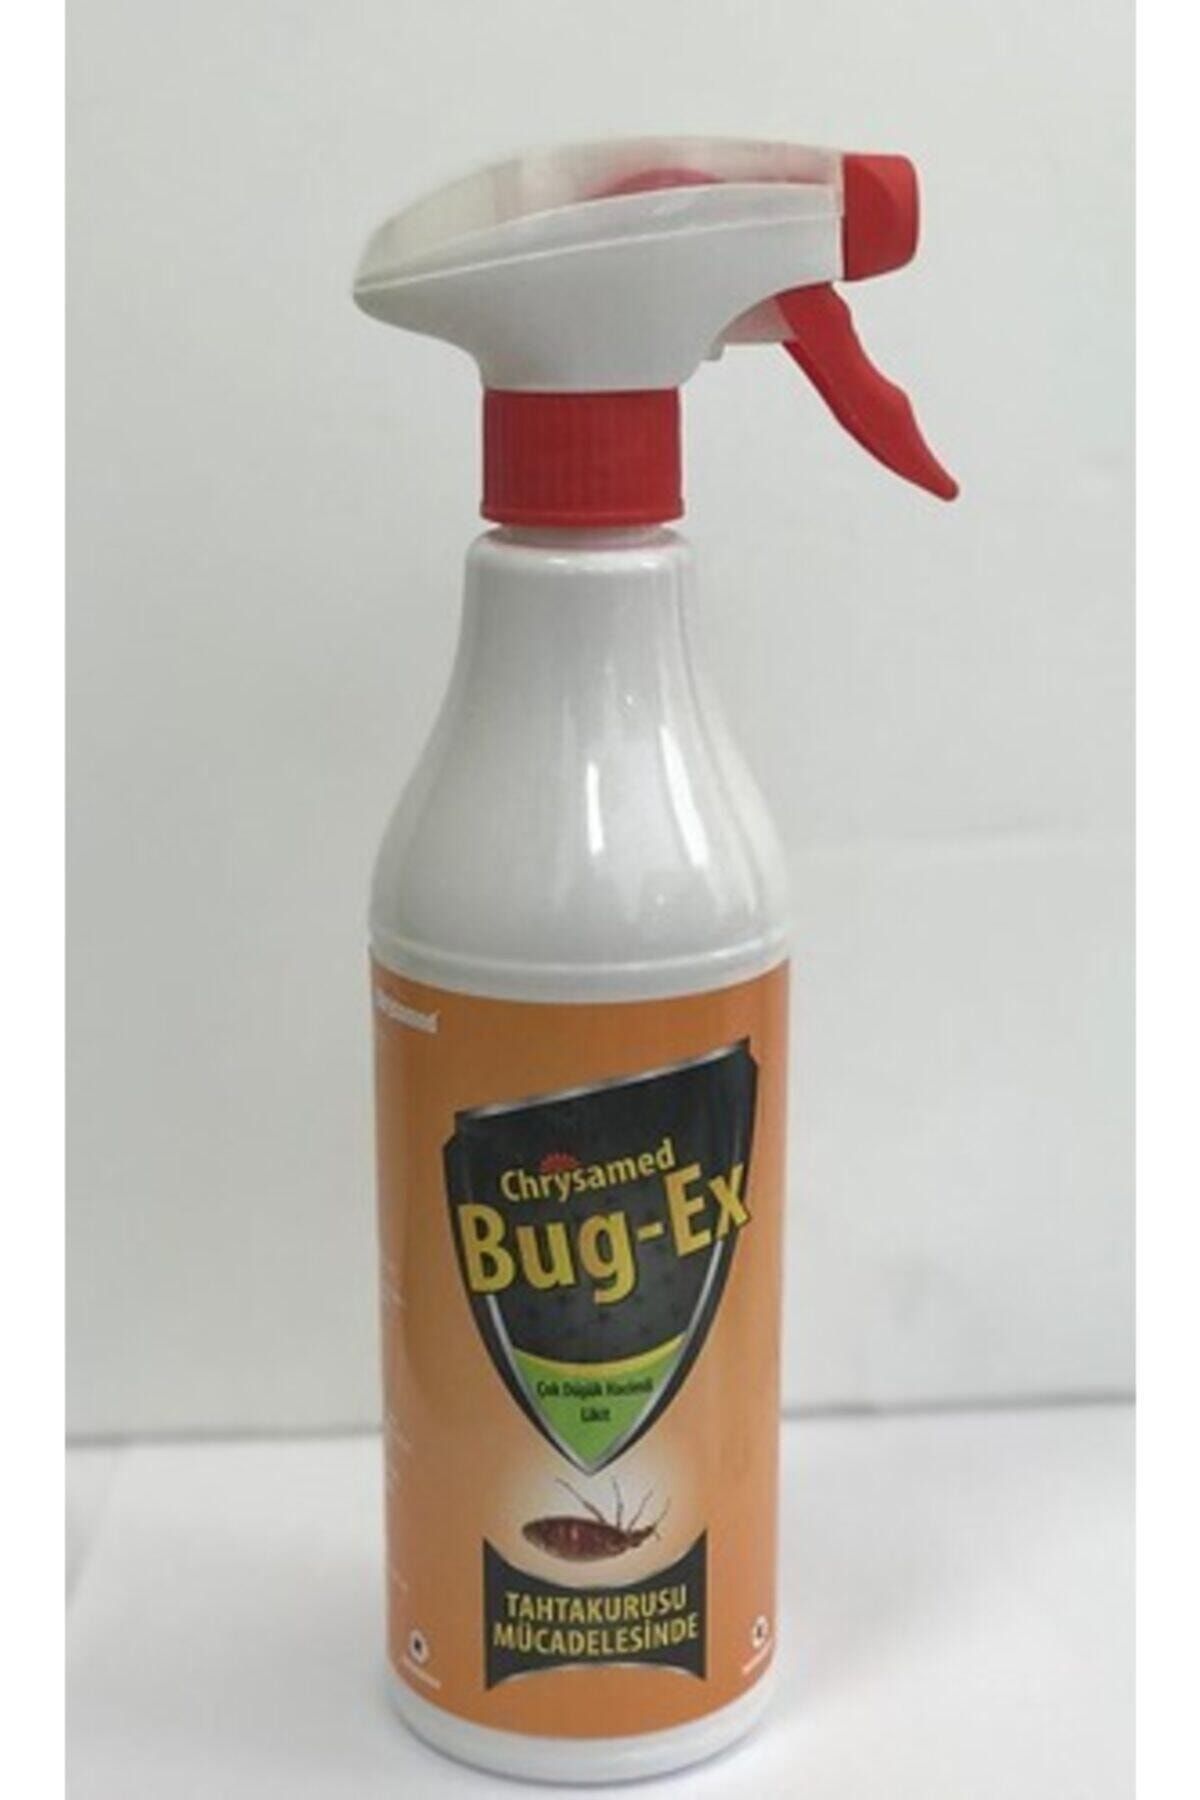 chrysamed tahtakurusu ilaci bug ex 500 ml fiyati yorumlari trendyol